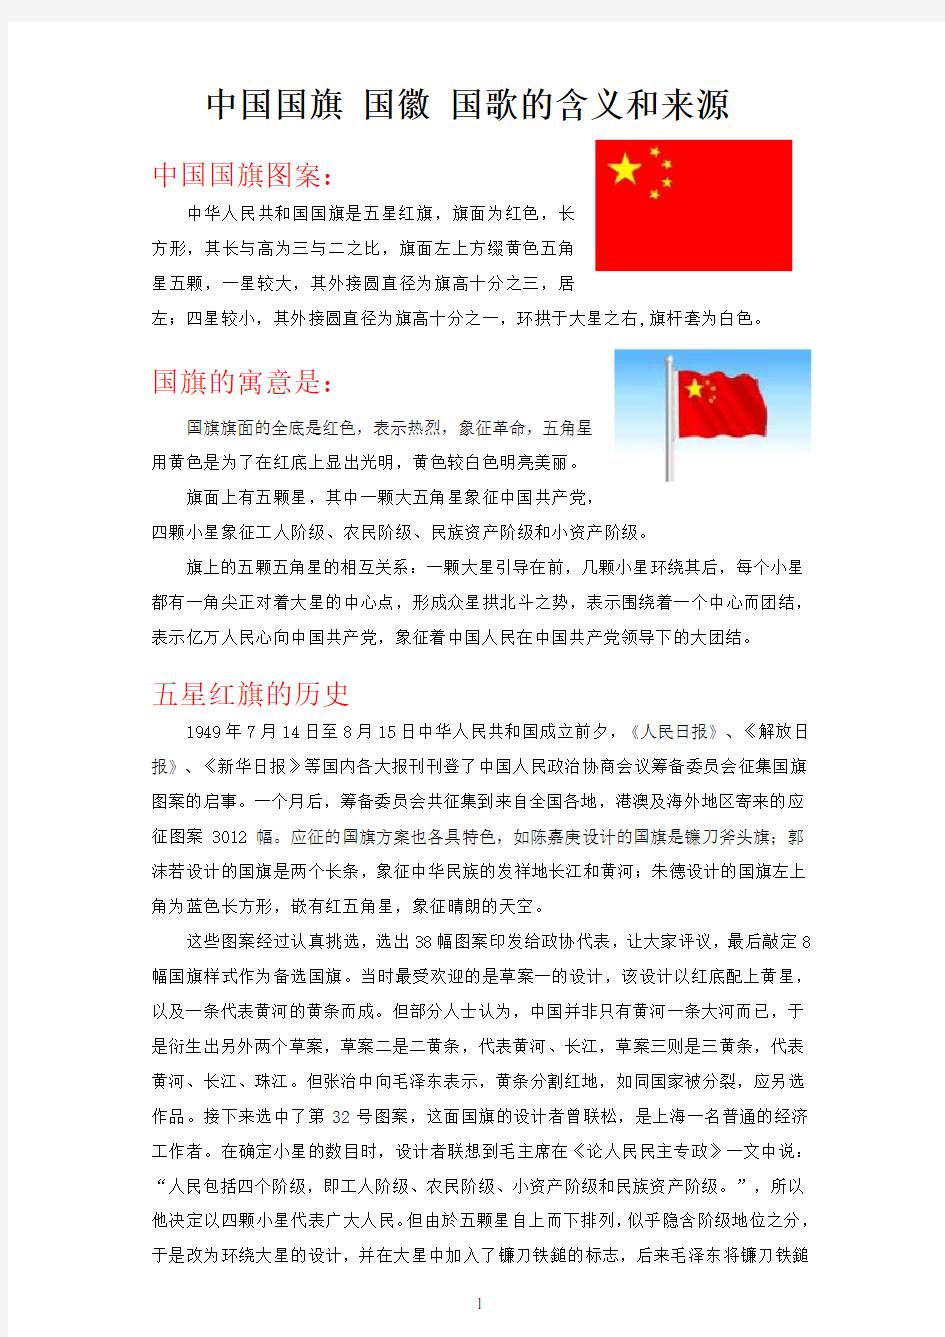 中国国旗 国徽 国歌的含义和来源